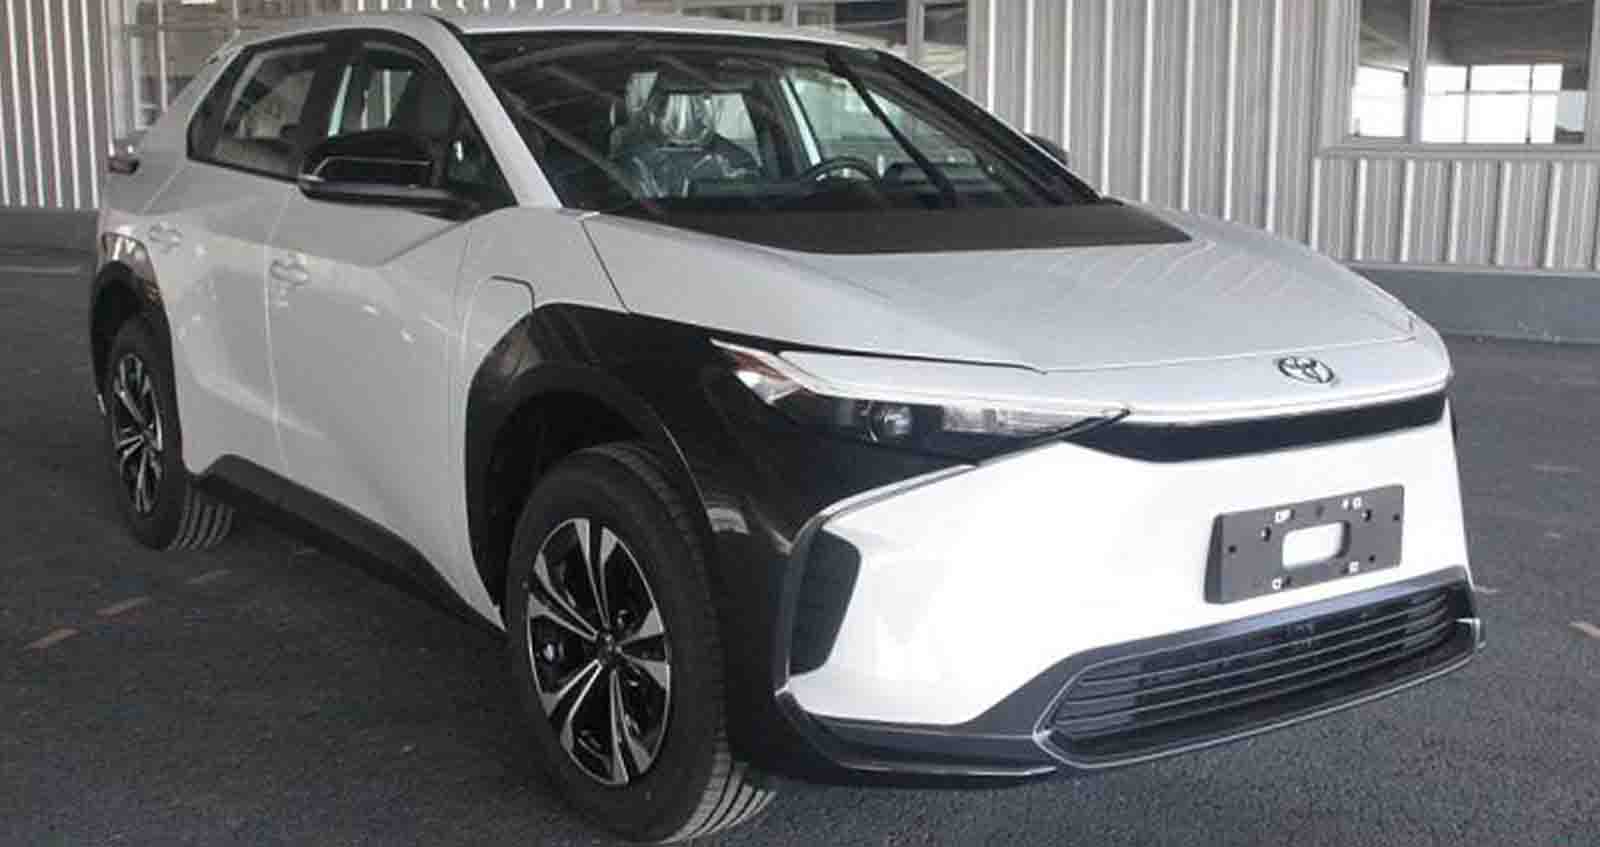 สิทธิบัตรคันจริง FAW Toyota bZ4X ก่อนเปิดขายในจีน เดือนหน้า